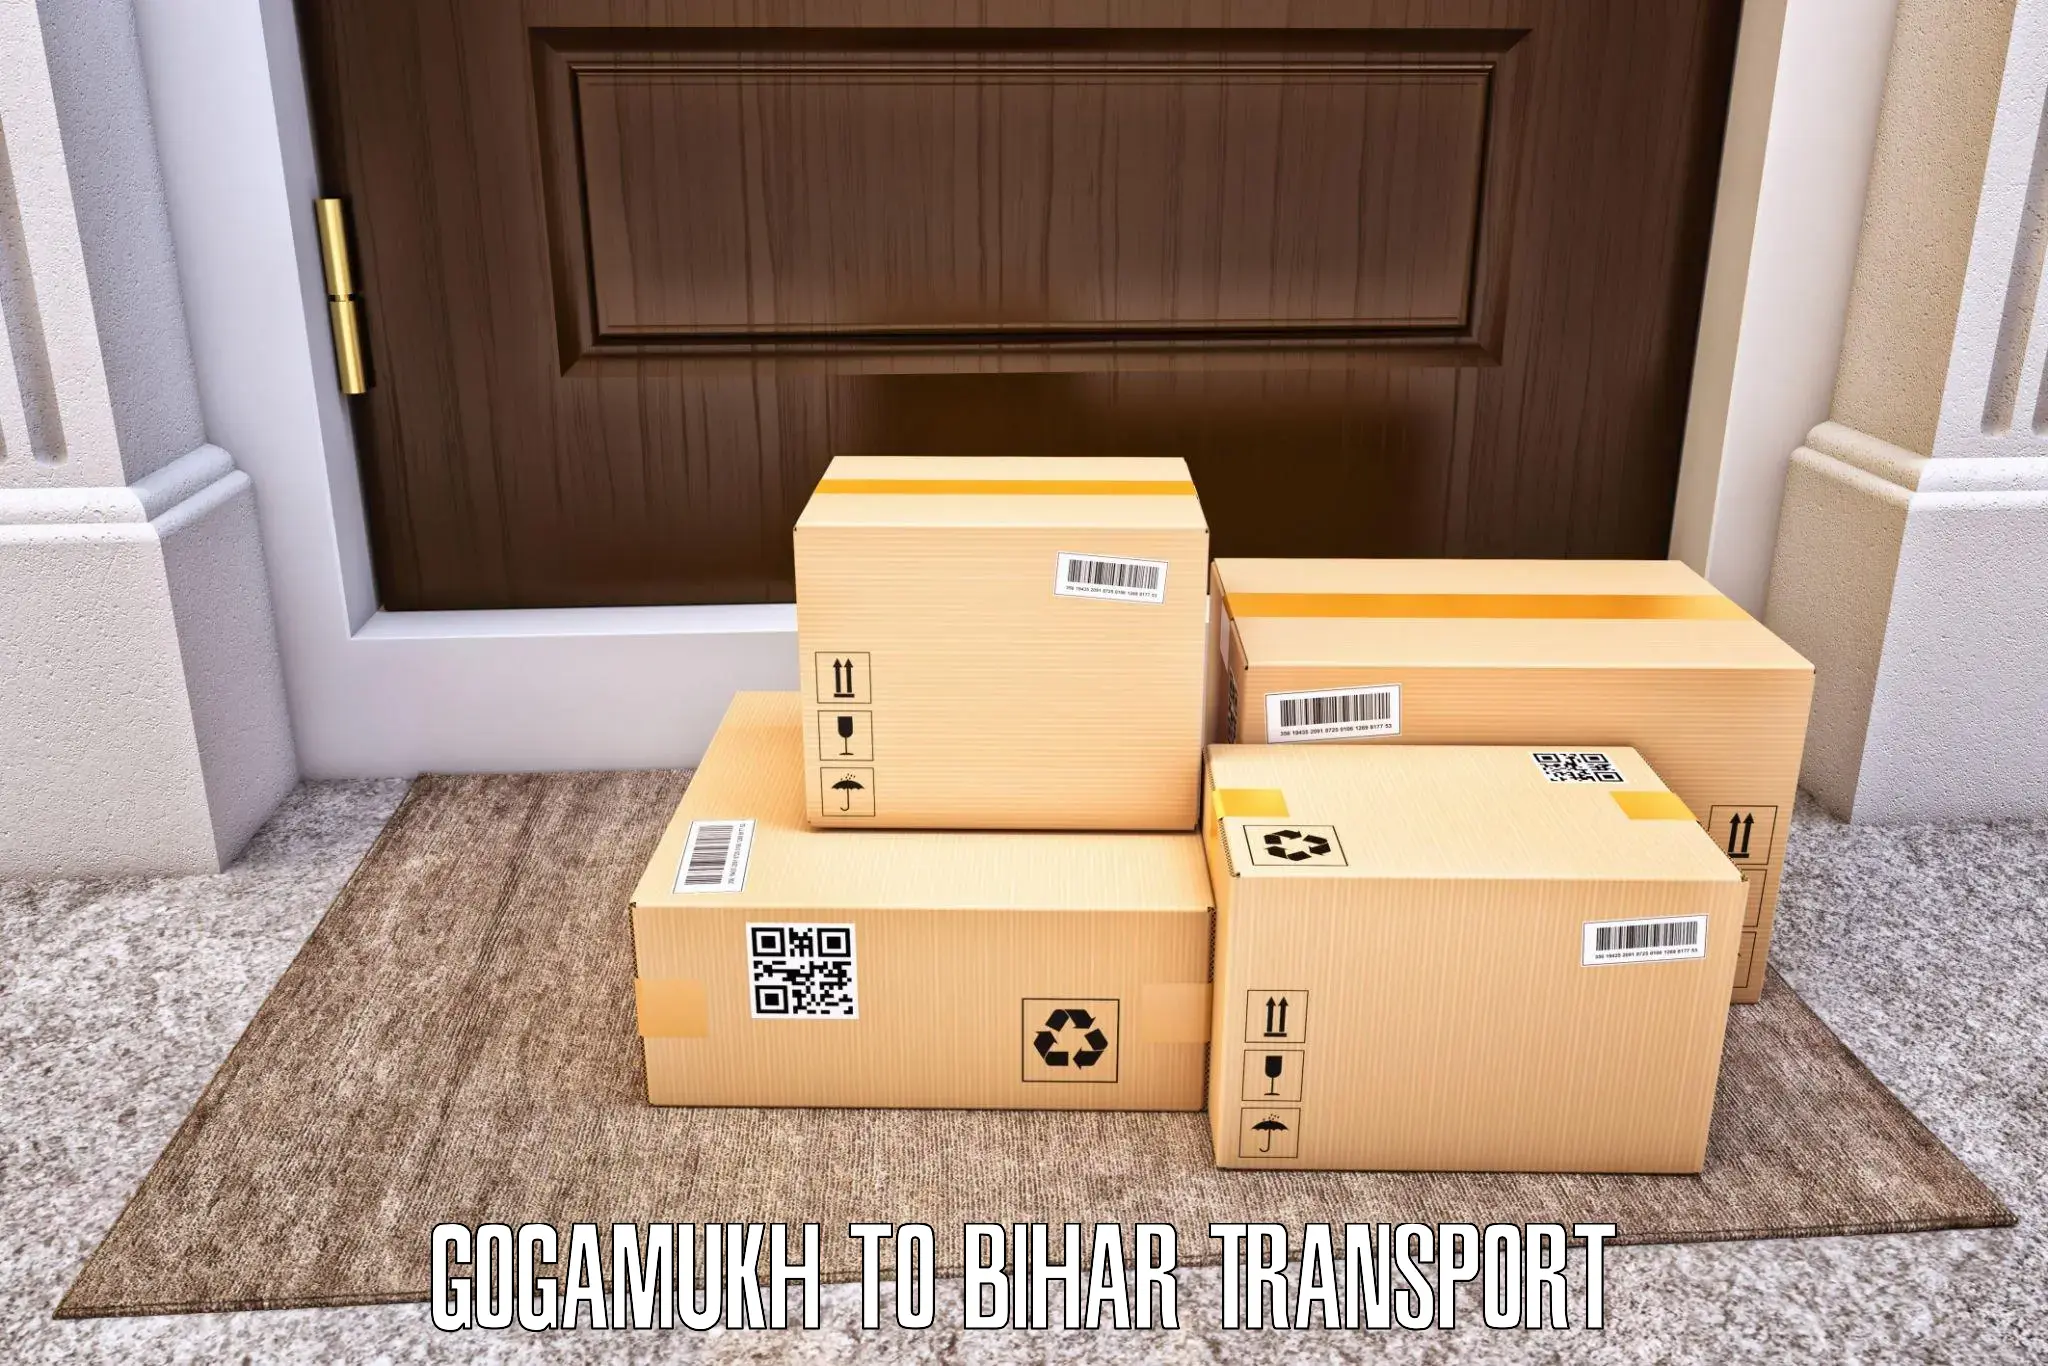 Vehicle transport services Gogamukh to Chakai